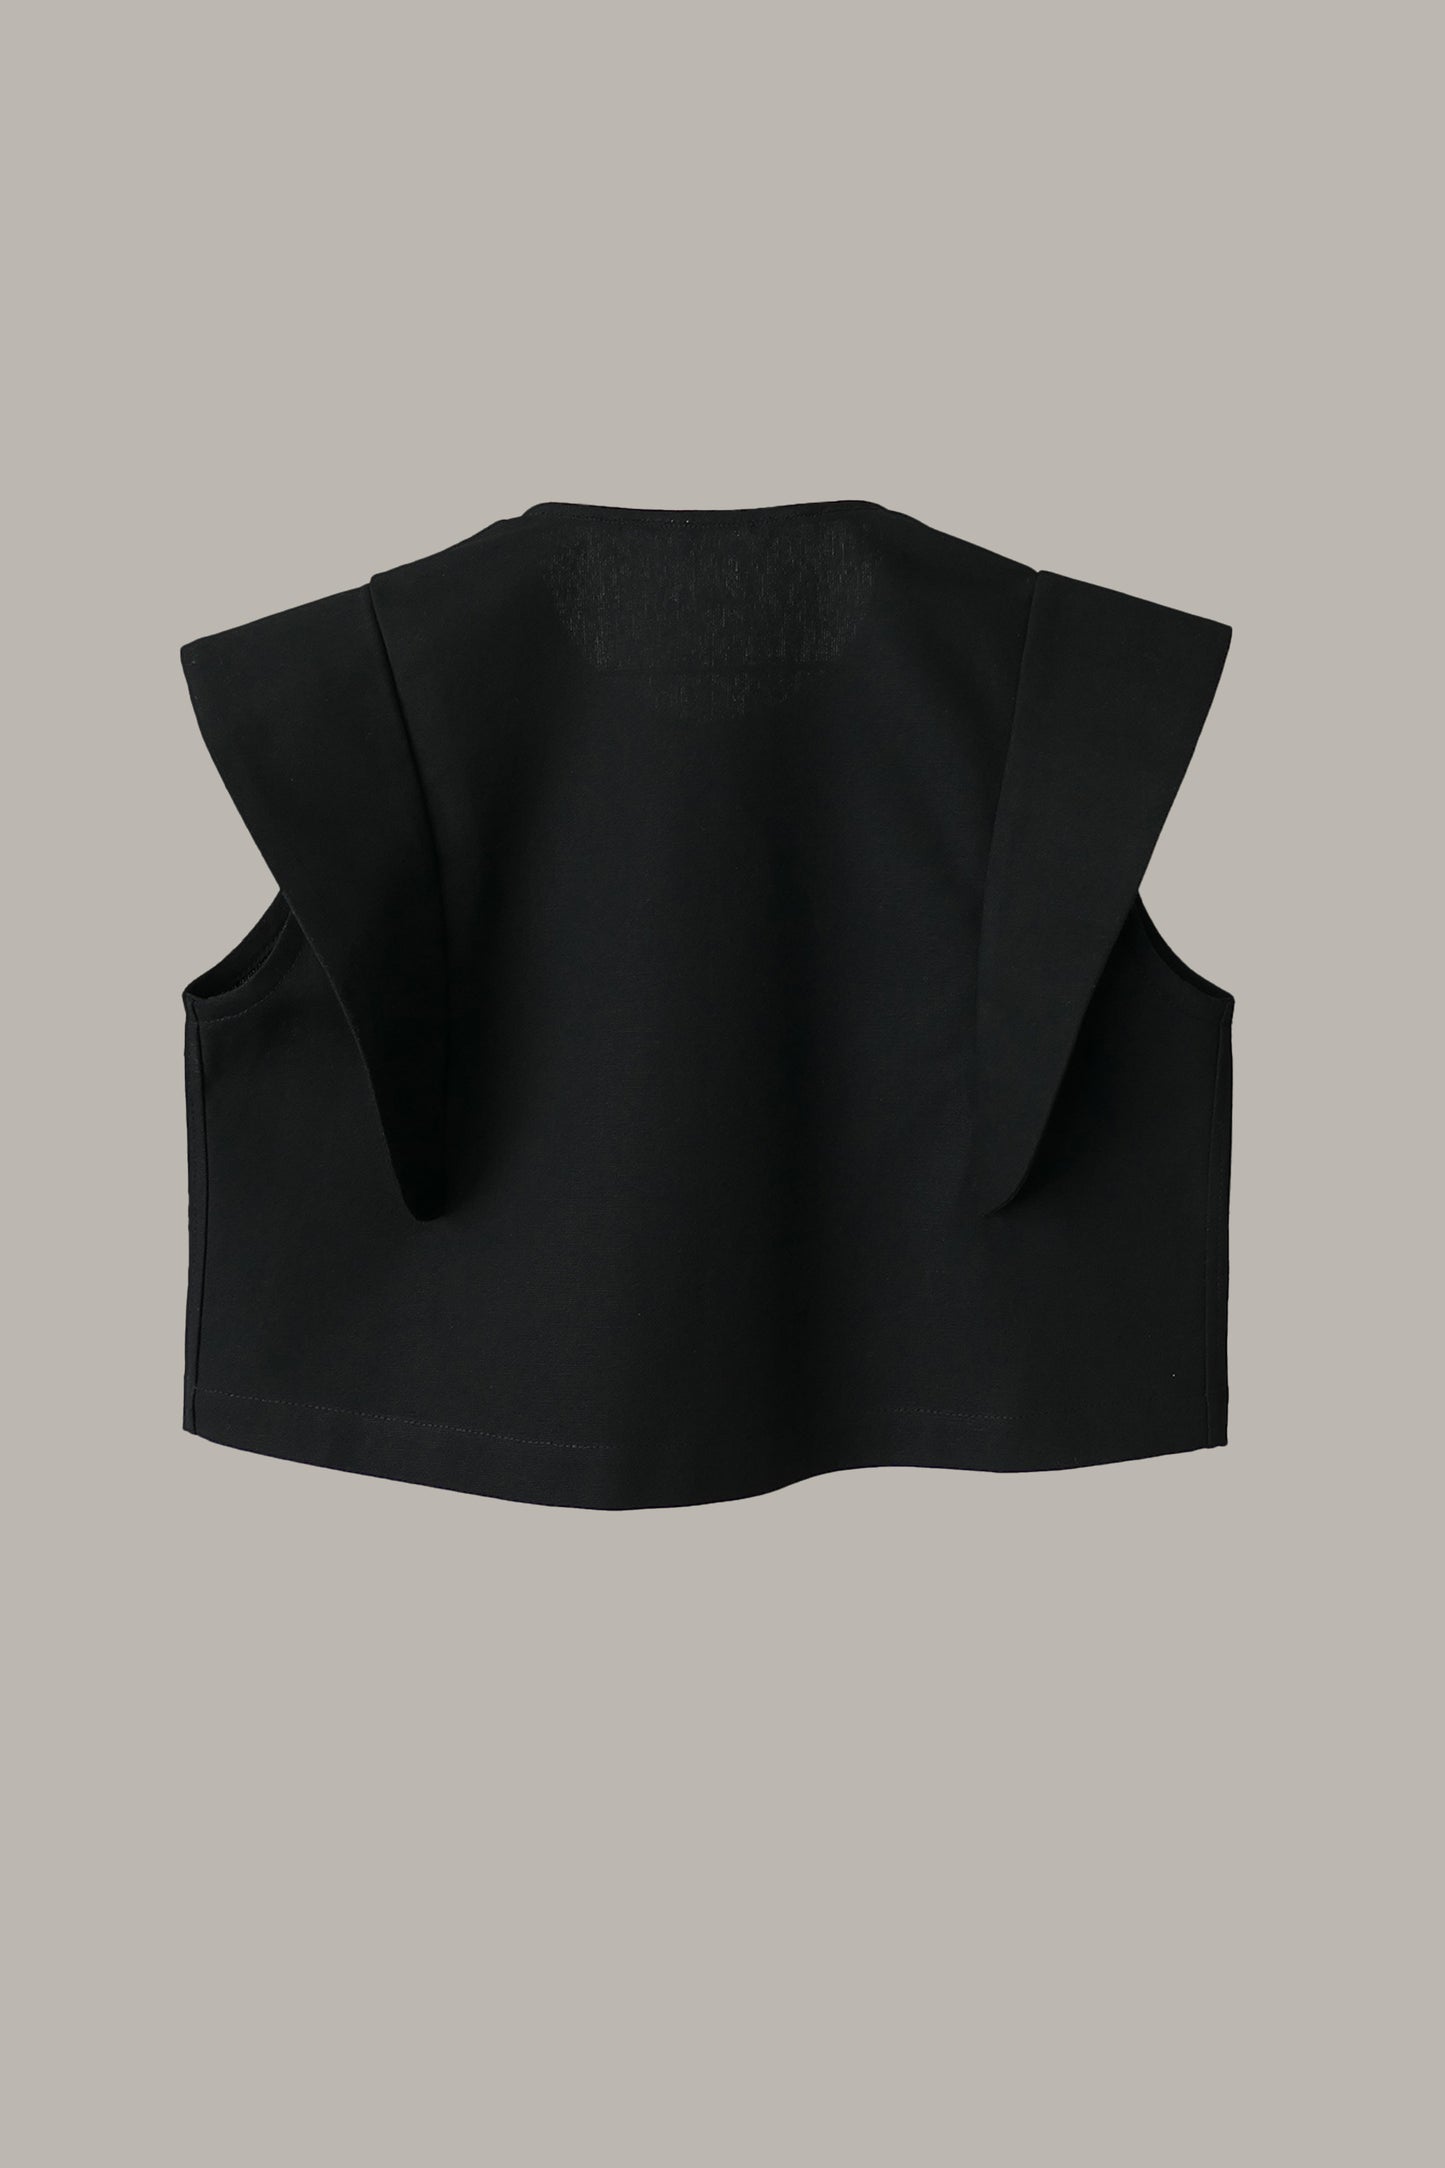 Hapi Vest Black Canvas {Made to Order}